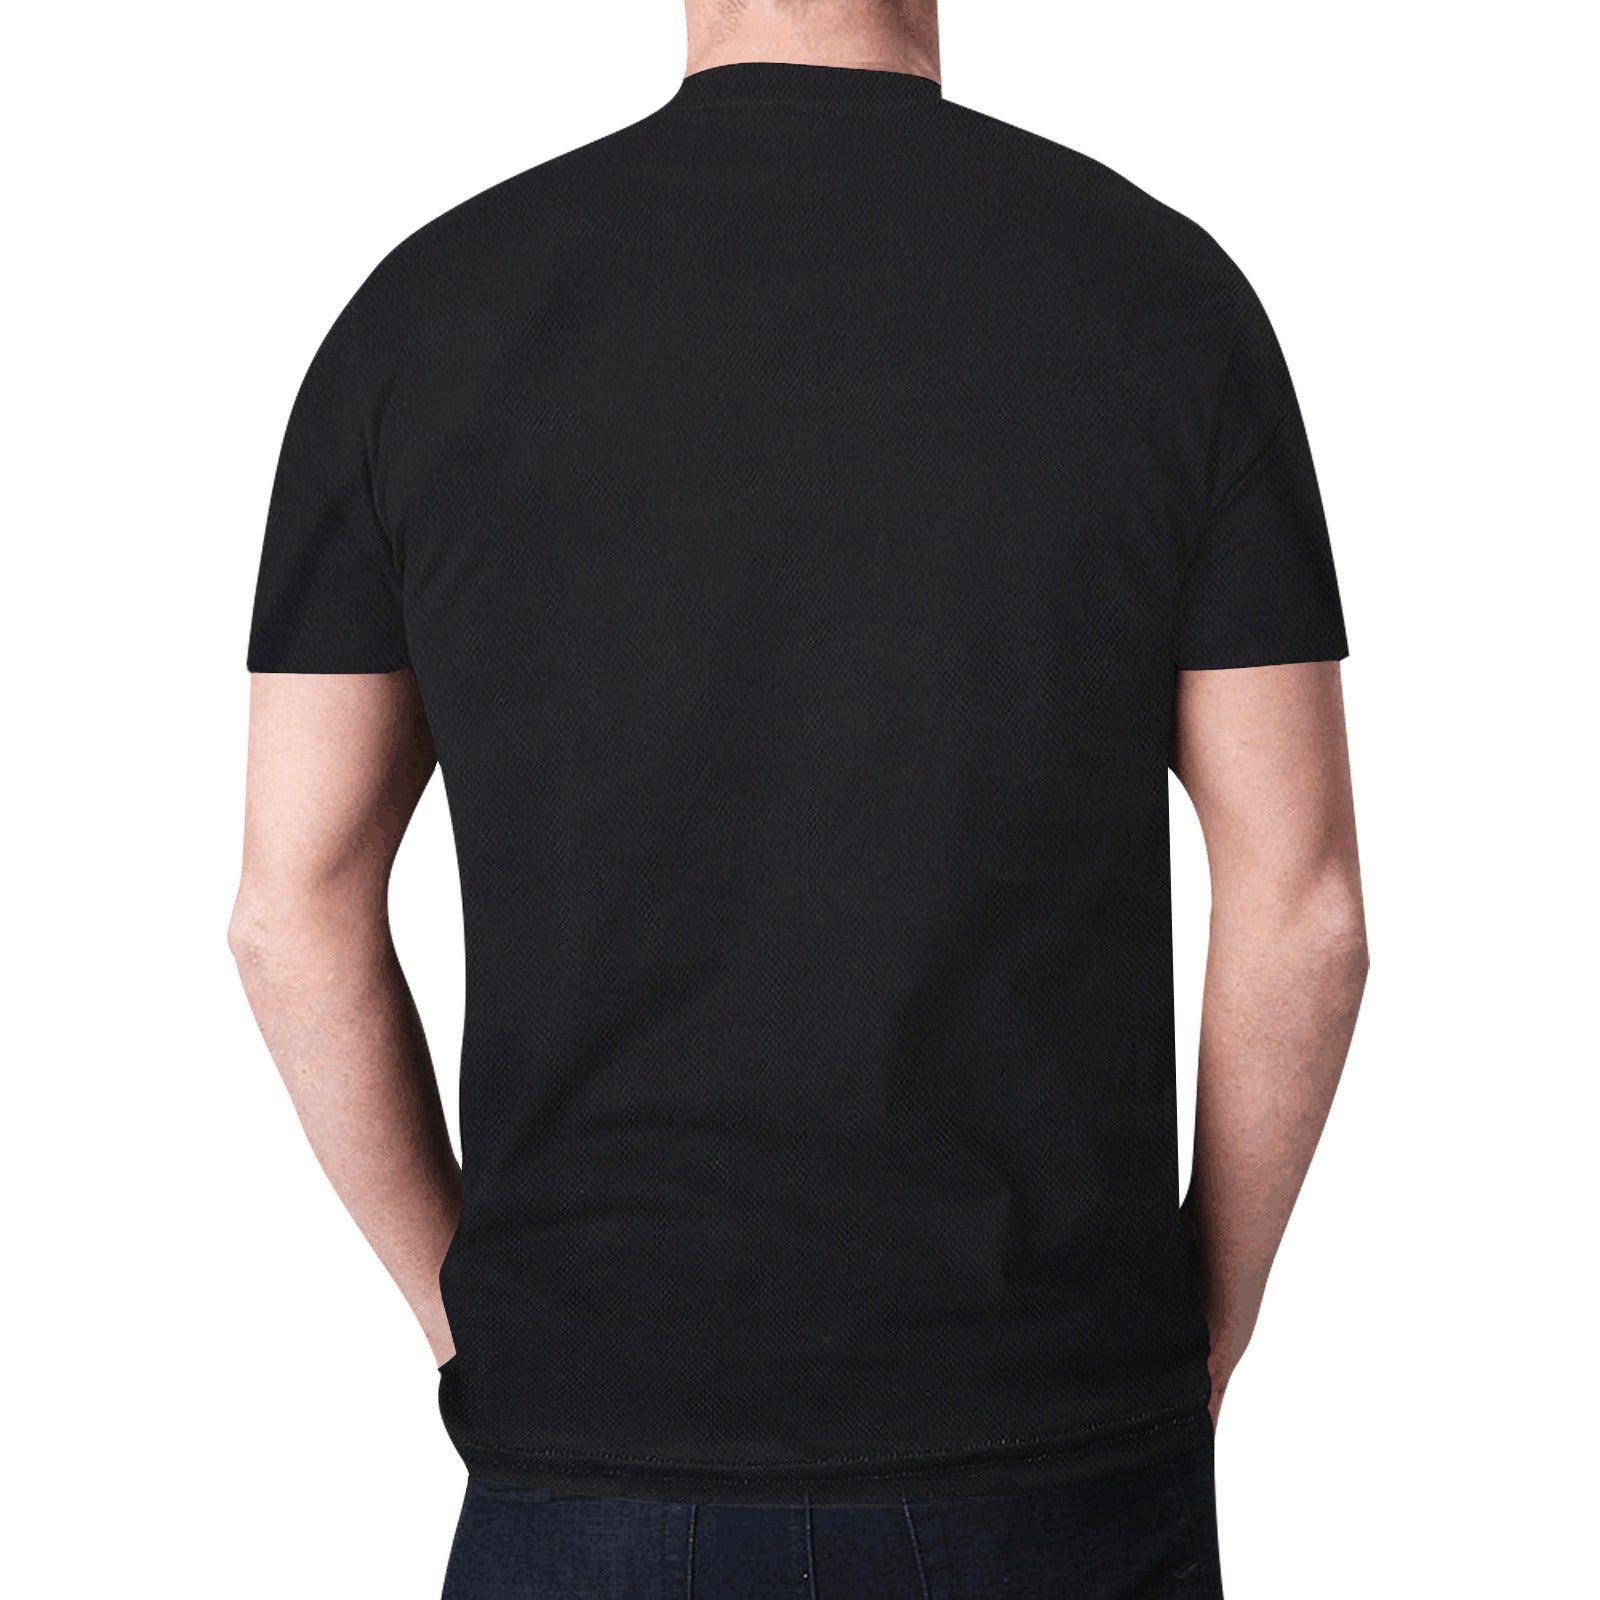 Elk Spirit Guide (Black) T-shirt for Men